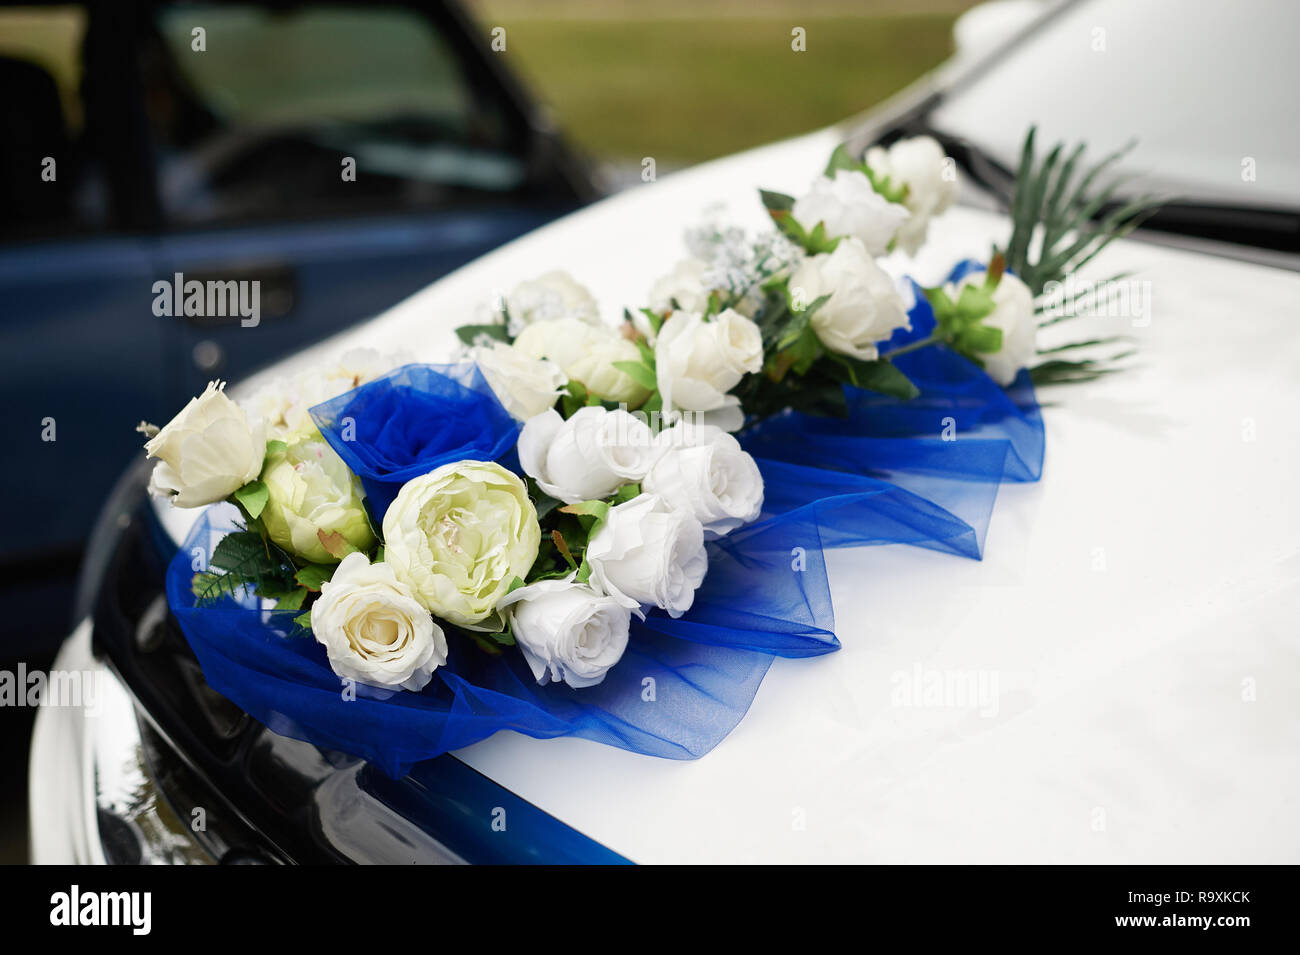 Auto Deko Blumenschmuck Hochzeit Hochzeitsauo heiraten deko blumen Photos